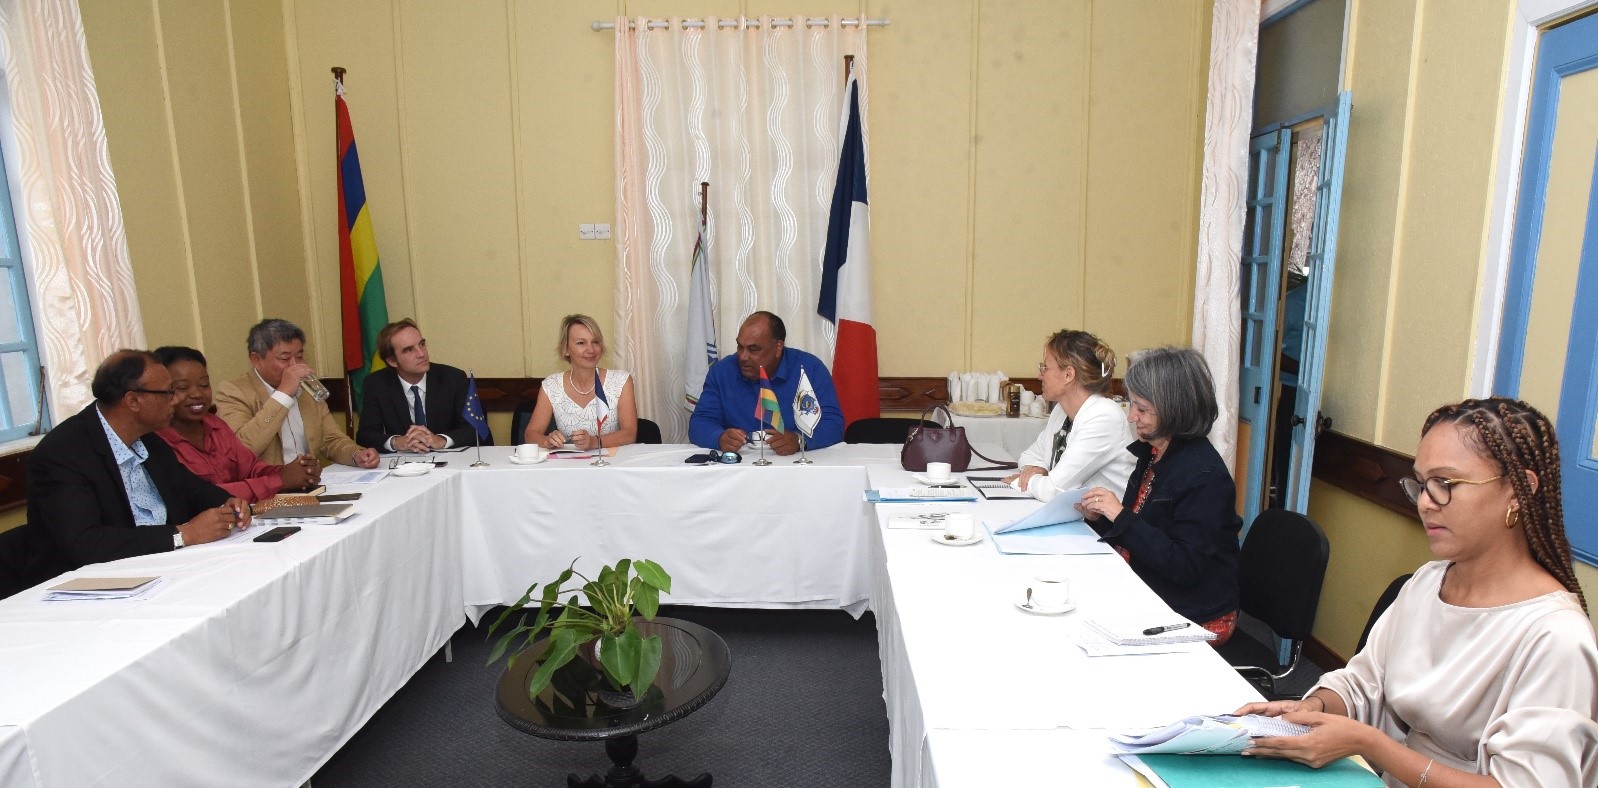 Florence Caussé-Tissier, ambassadrice de France à Maurice, a effectué une visite de travail à Rodrigues les 17-18 novembre